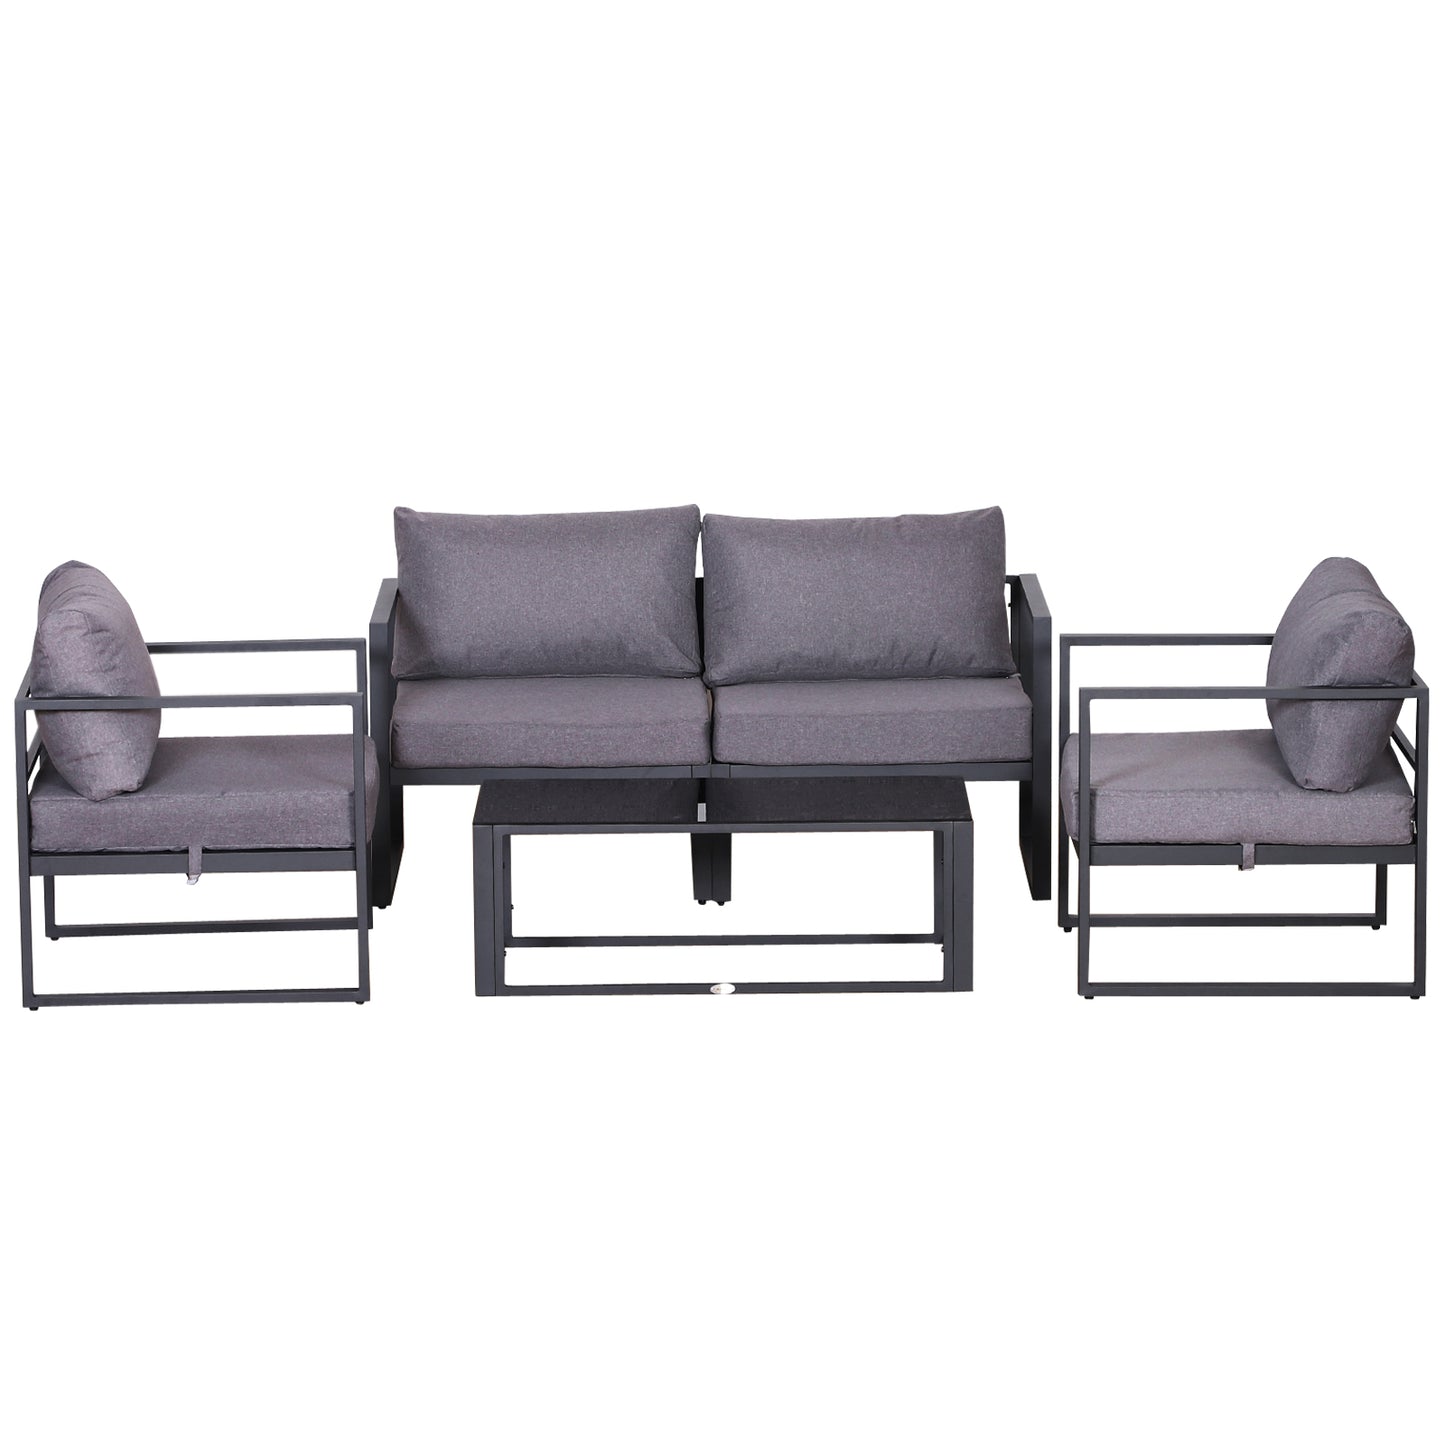 Outsunny Aluminium Frame Outdoor Garden Double & Single Sofa Furniture Set w/ Table Grey